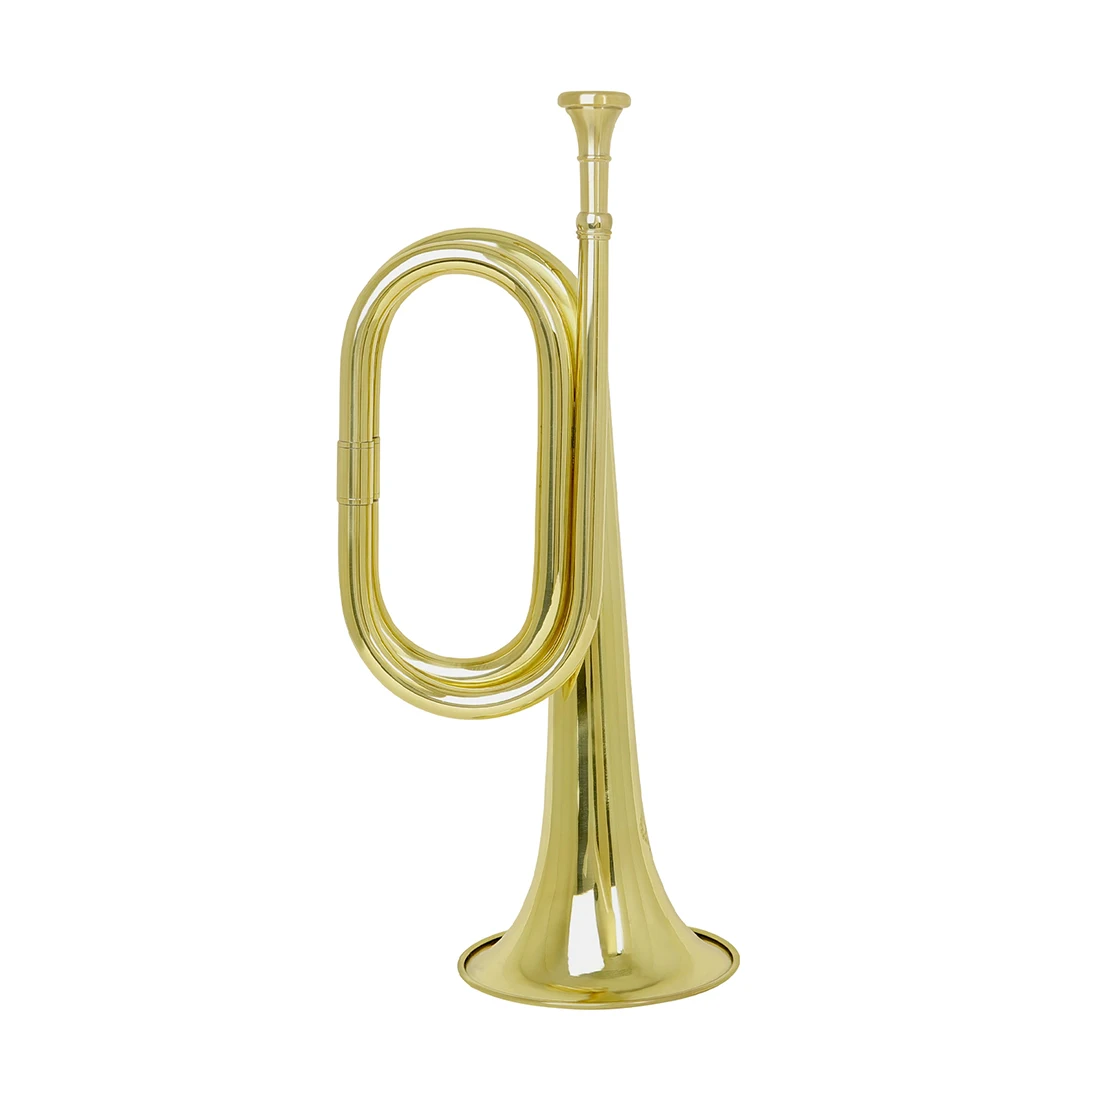 

MBAT латунная кавалерийская труба с мундштуком лакированная золотая поверхность ручная работа утолщенный латунный музыкальный инструмент